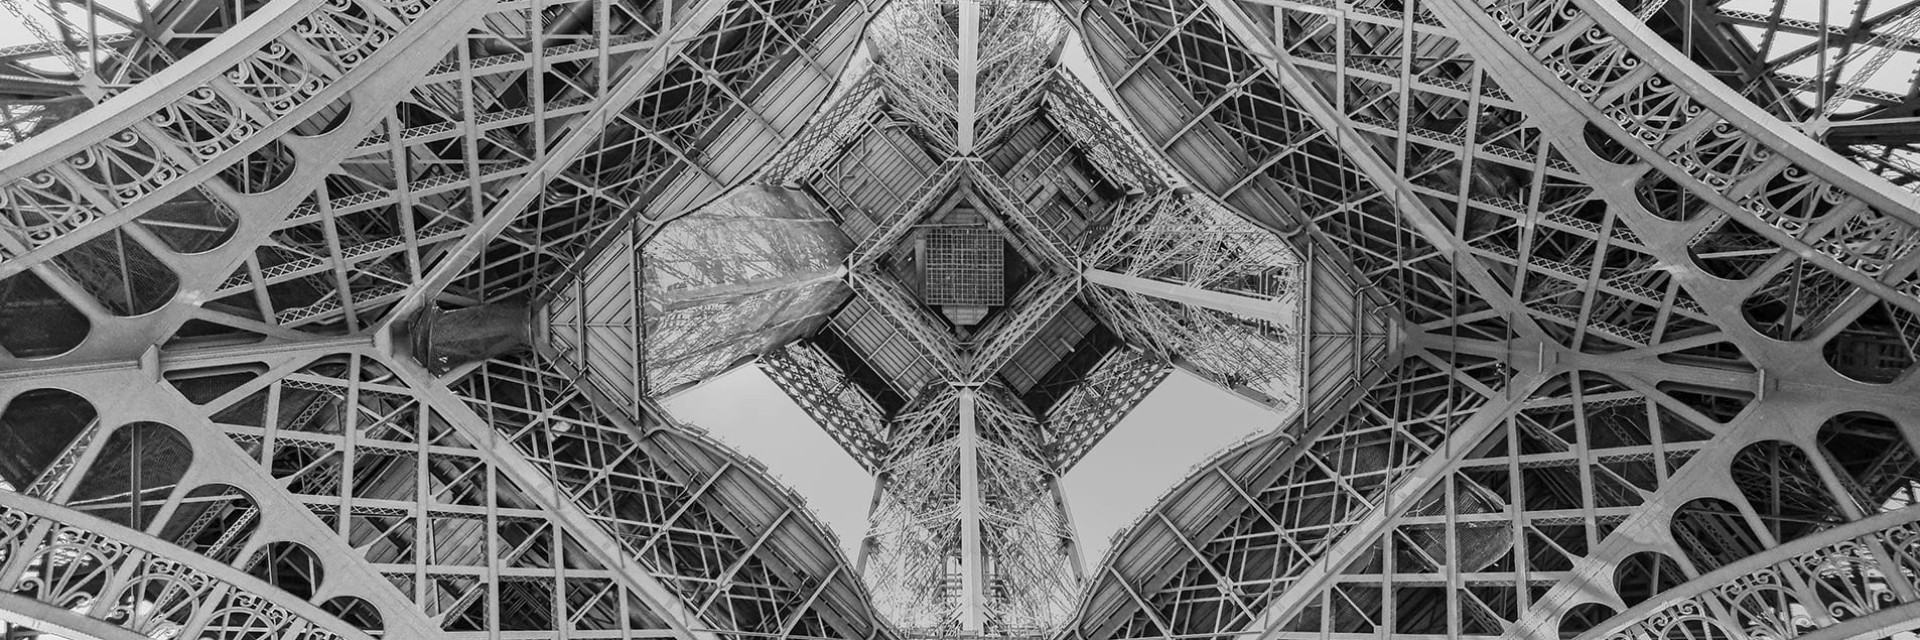 Der Eiffelturm in Paris von unten gesehen zur Veranschaulichung des Erbes französischen Know-hows und der französischen Innovation – Geschichte der EuroCave-Fabrik in Nordfrankreich